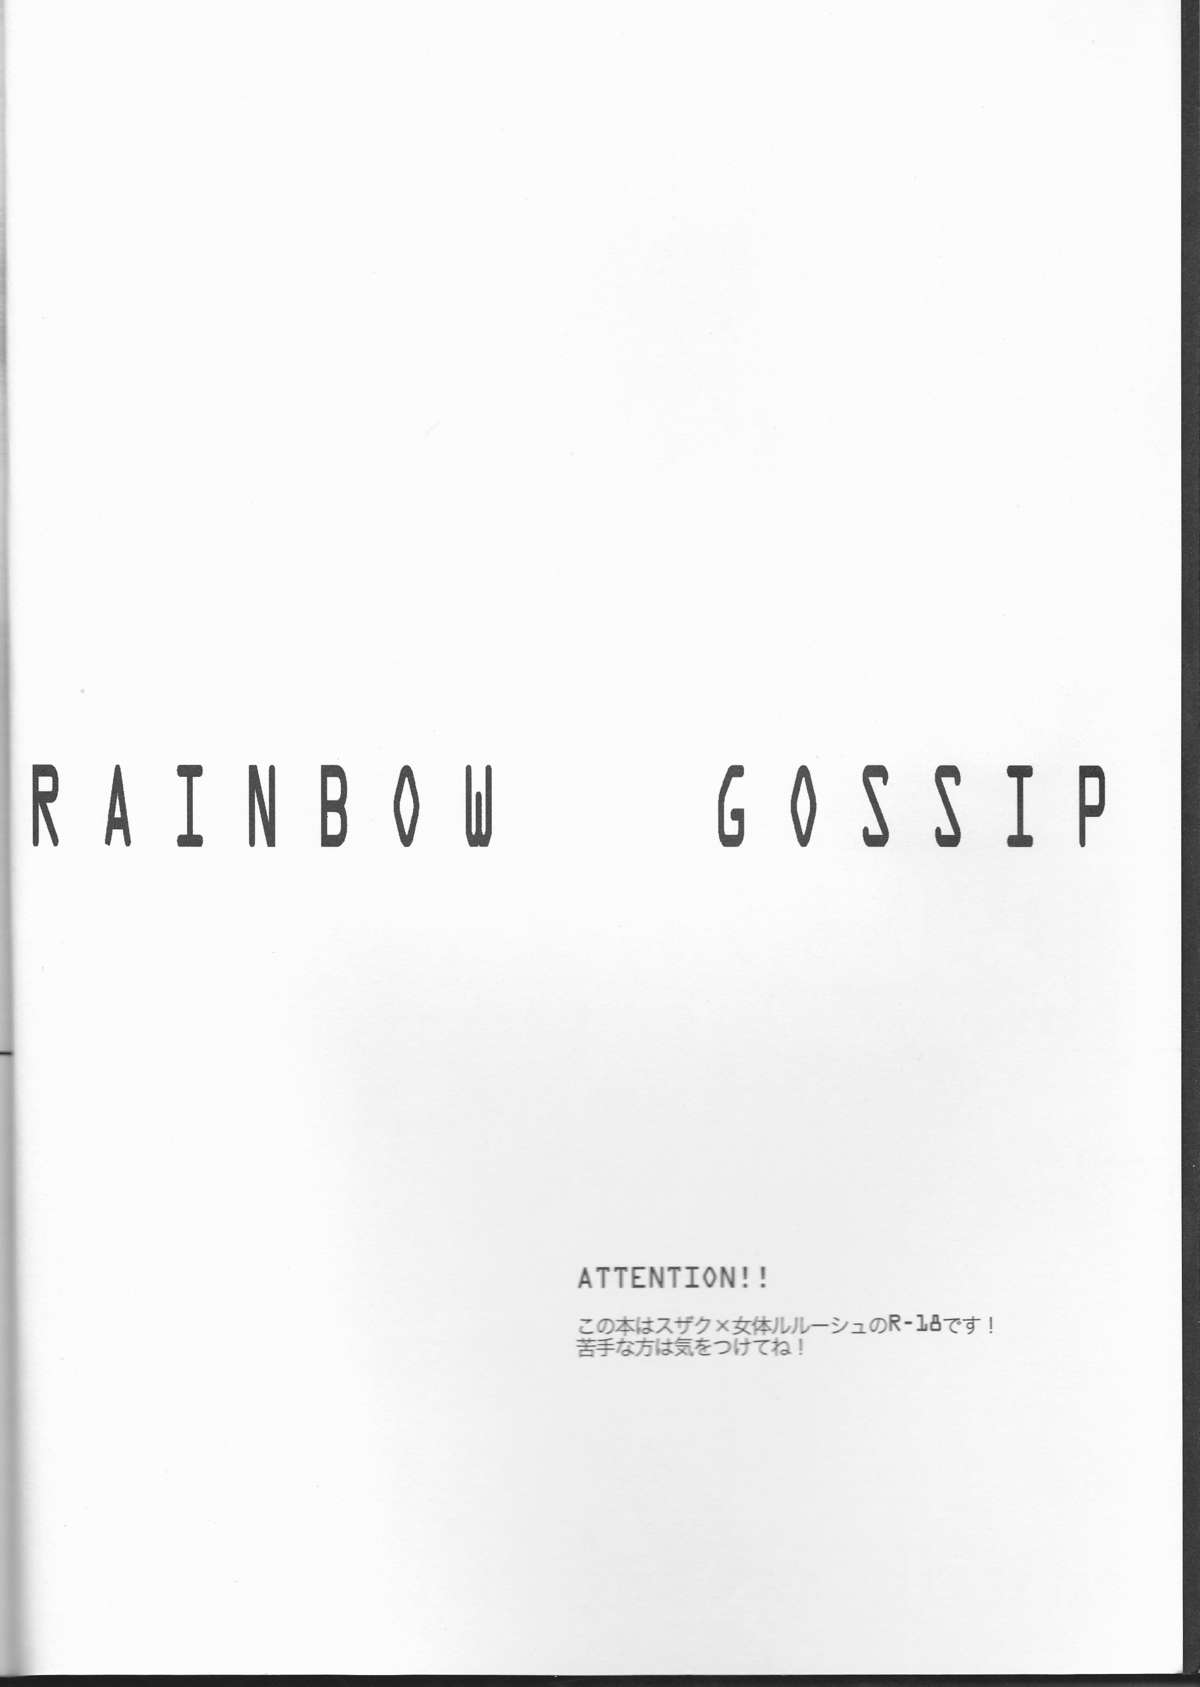 (SUPER19) [NATURAL PRODUCTS (タカシナトオル)] Rainbow Gossip (コードギアス) [英訳]